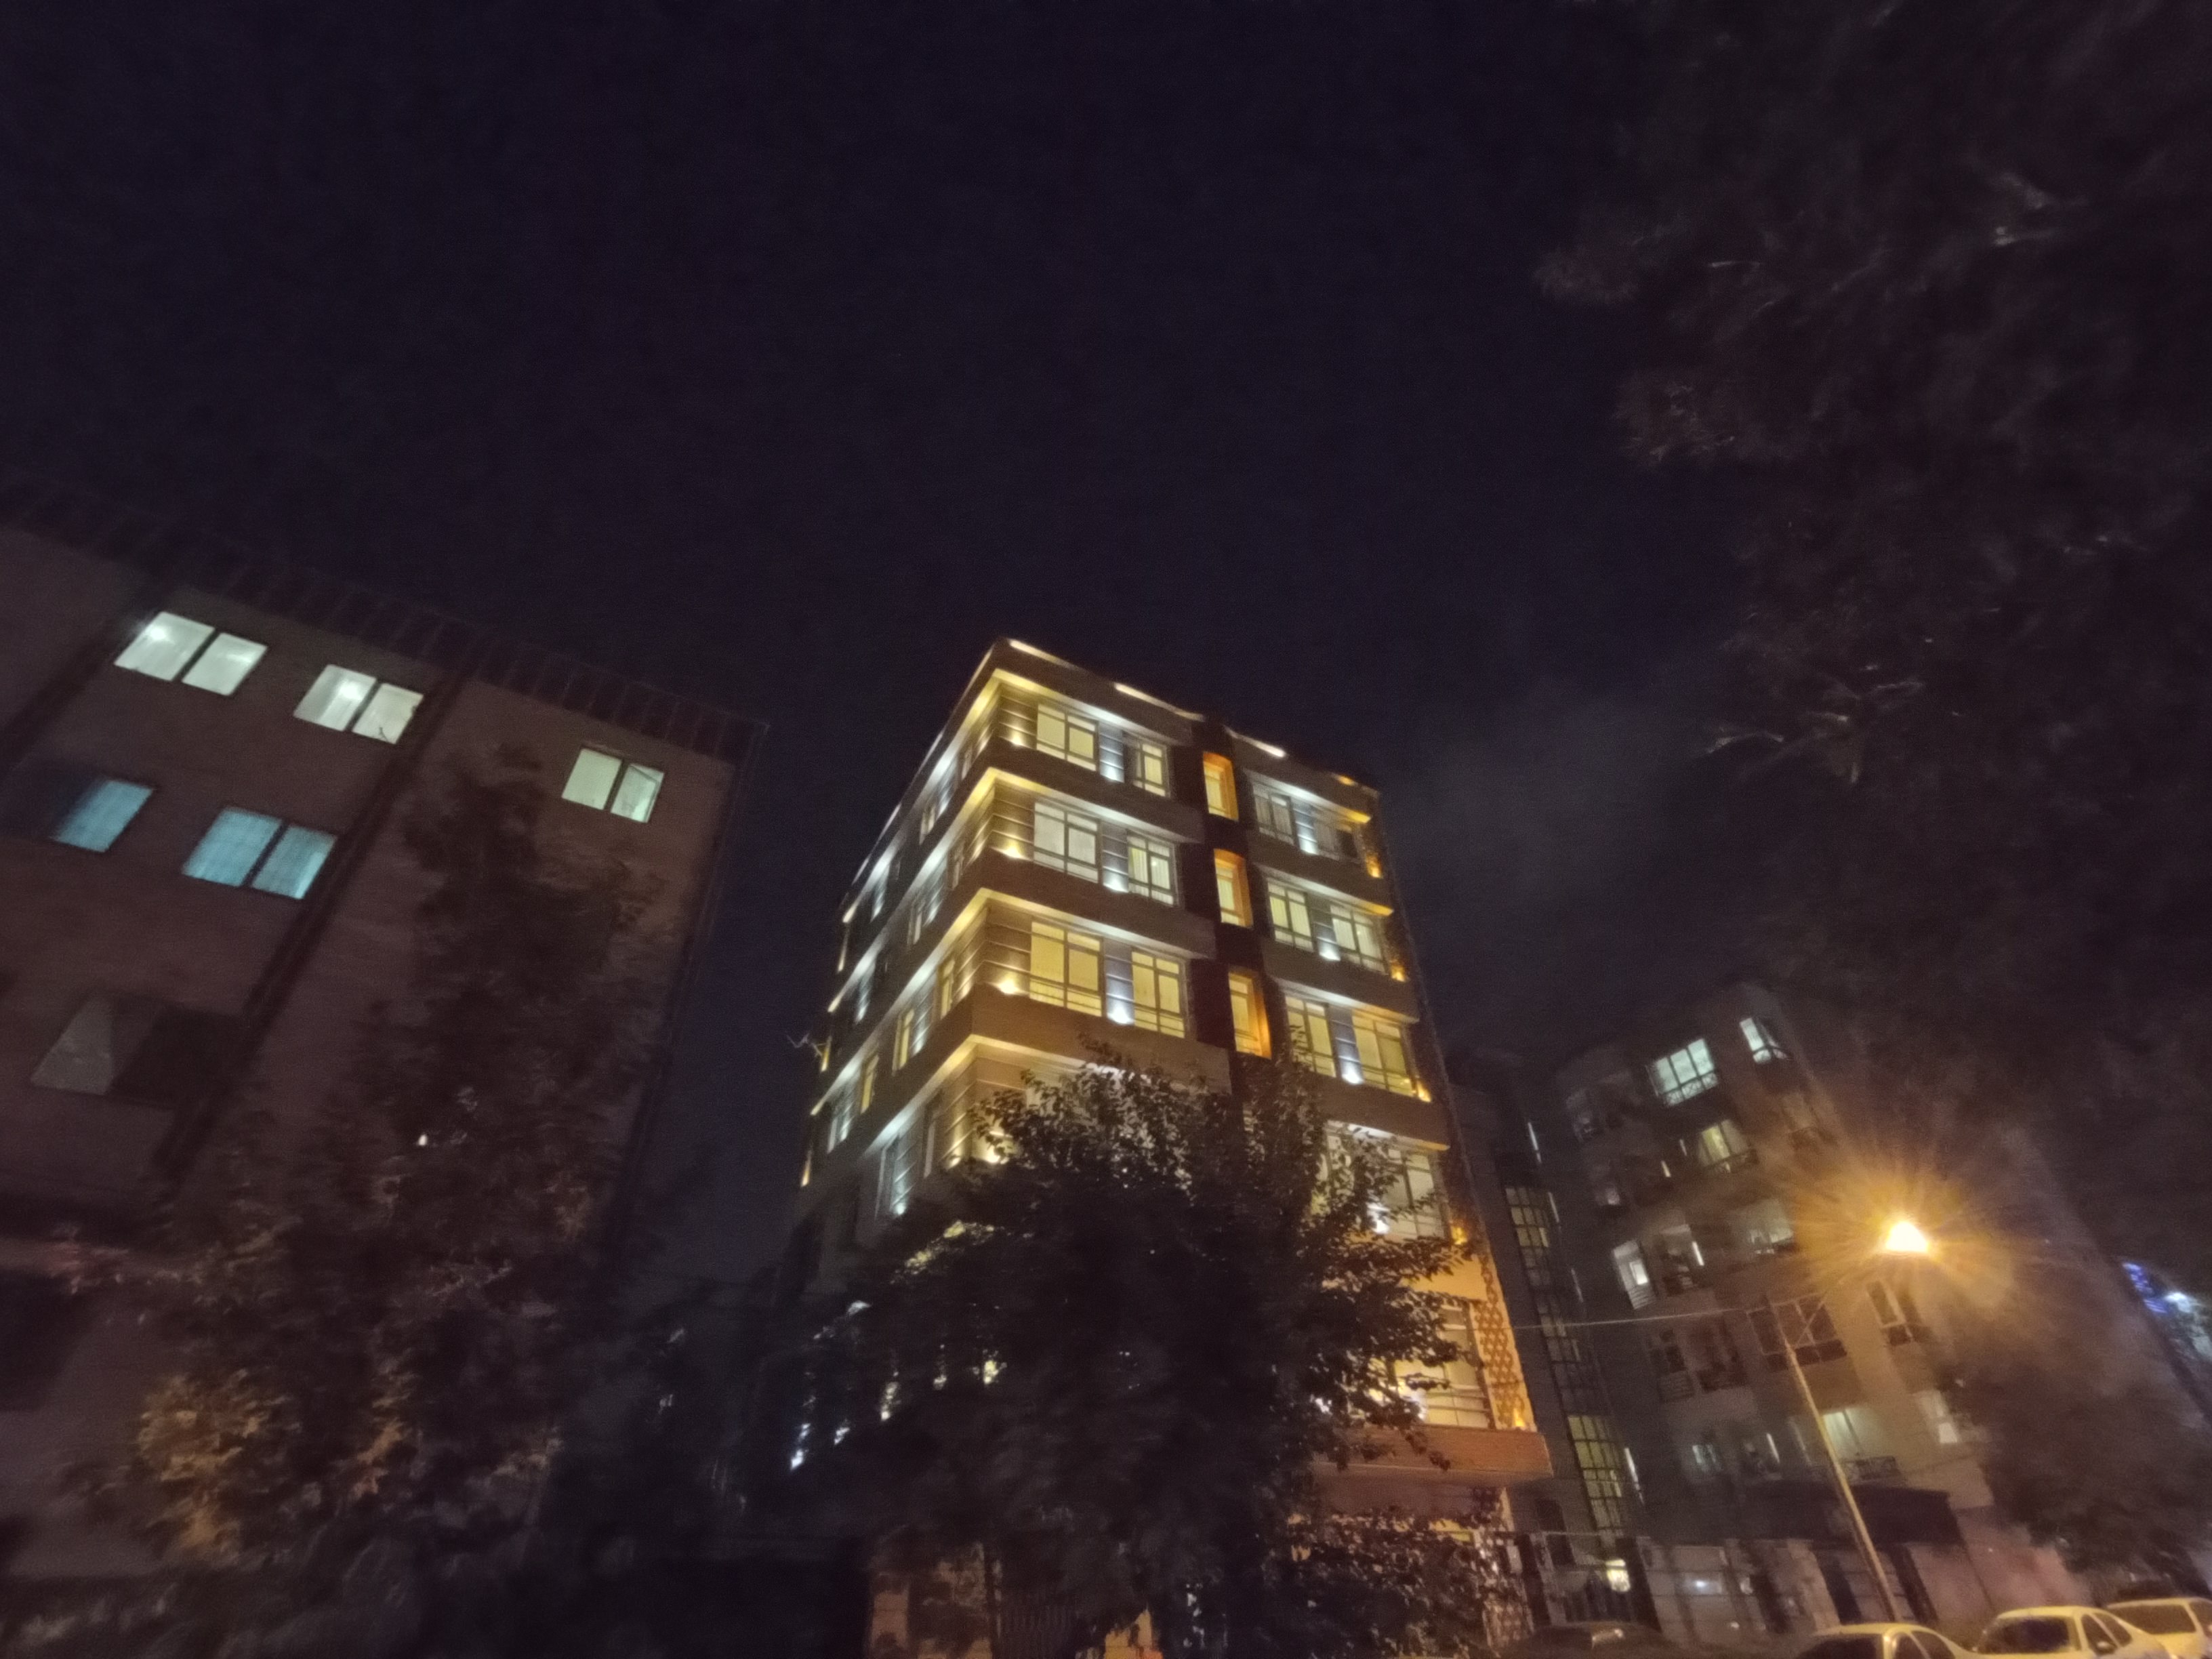 نمونه عکس اولتراواید ردمی نوت ۹ در تاریکی - ساختمان مسکونی نارمک